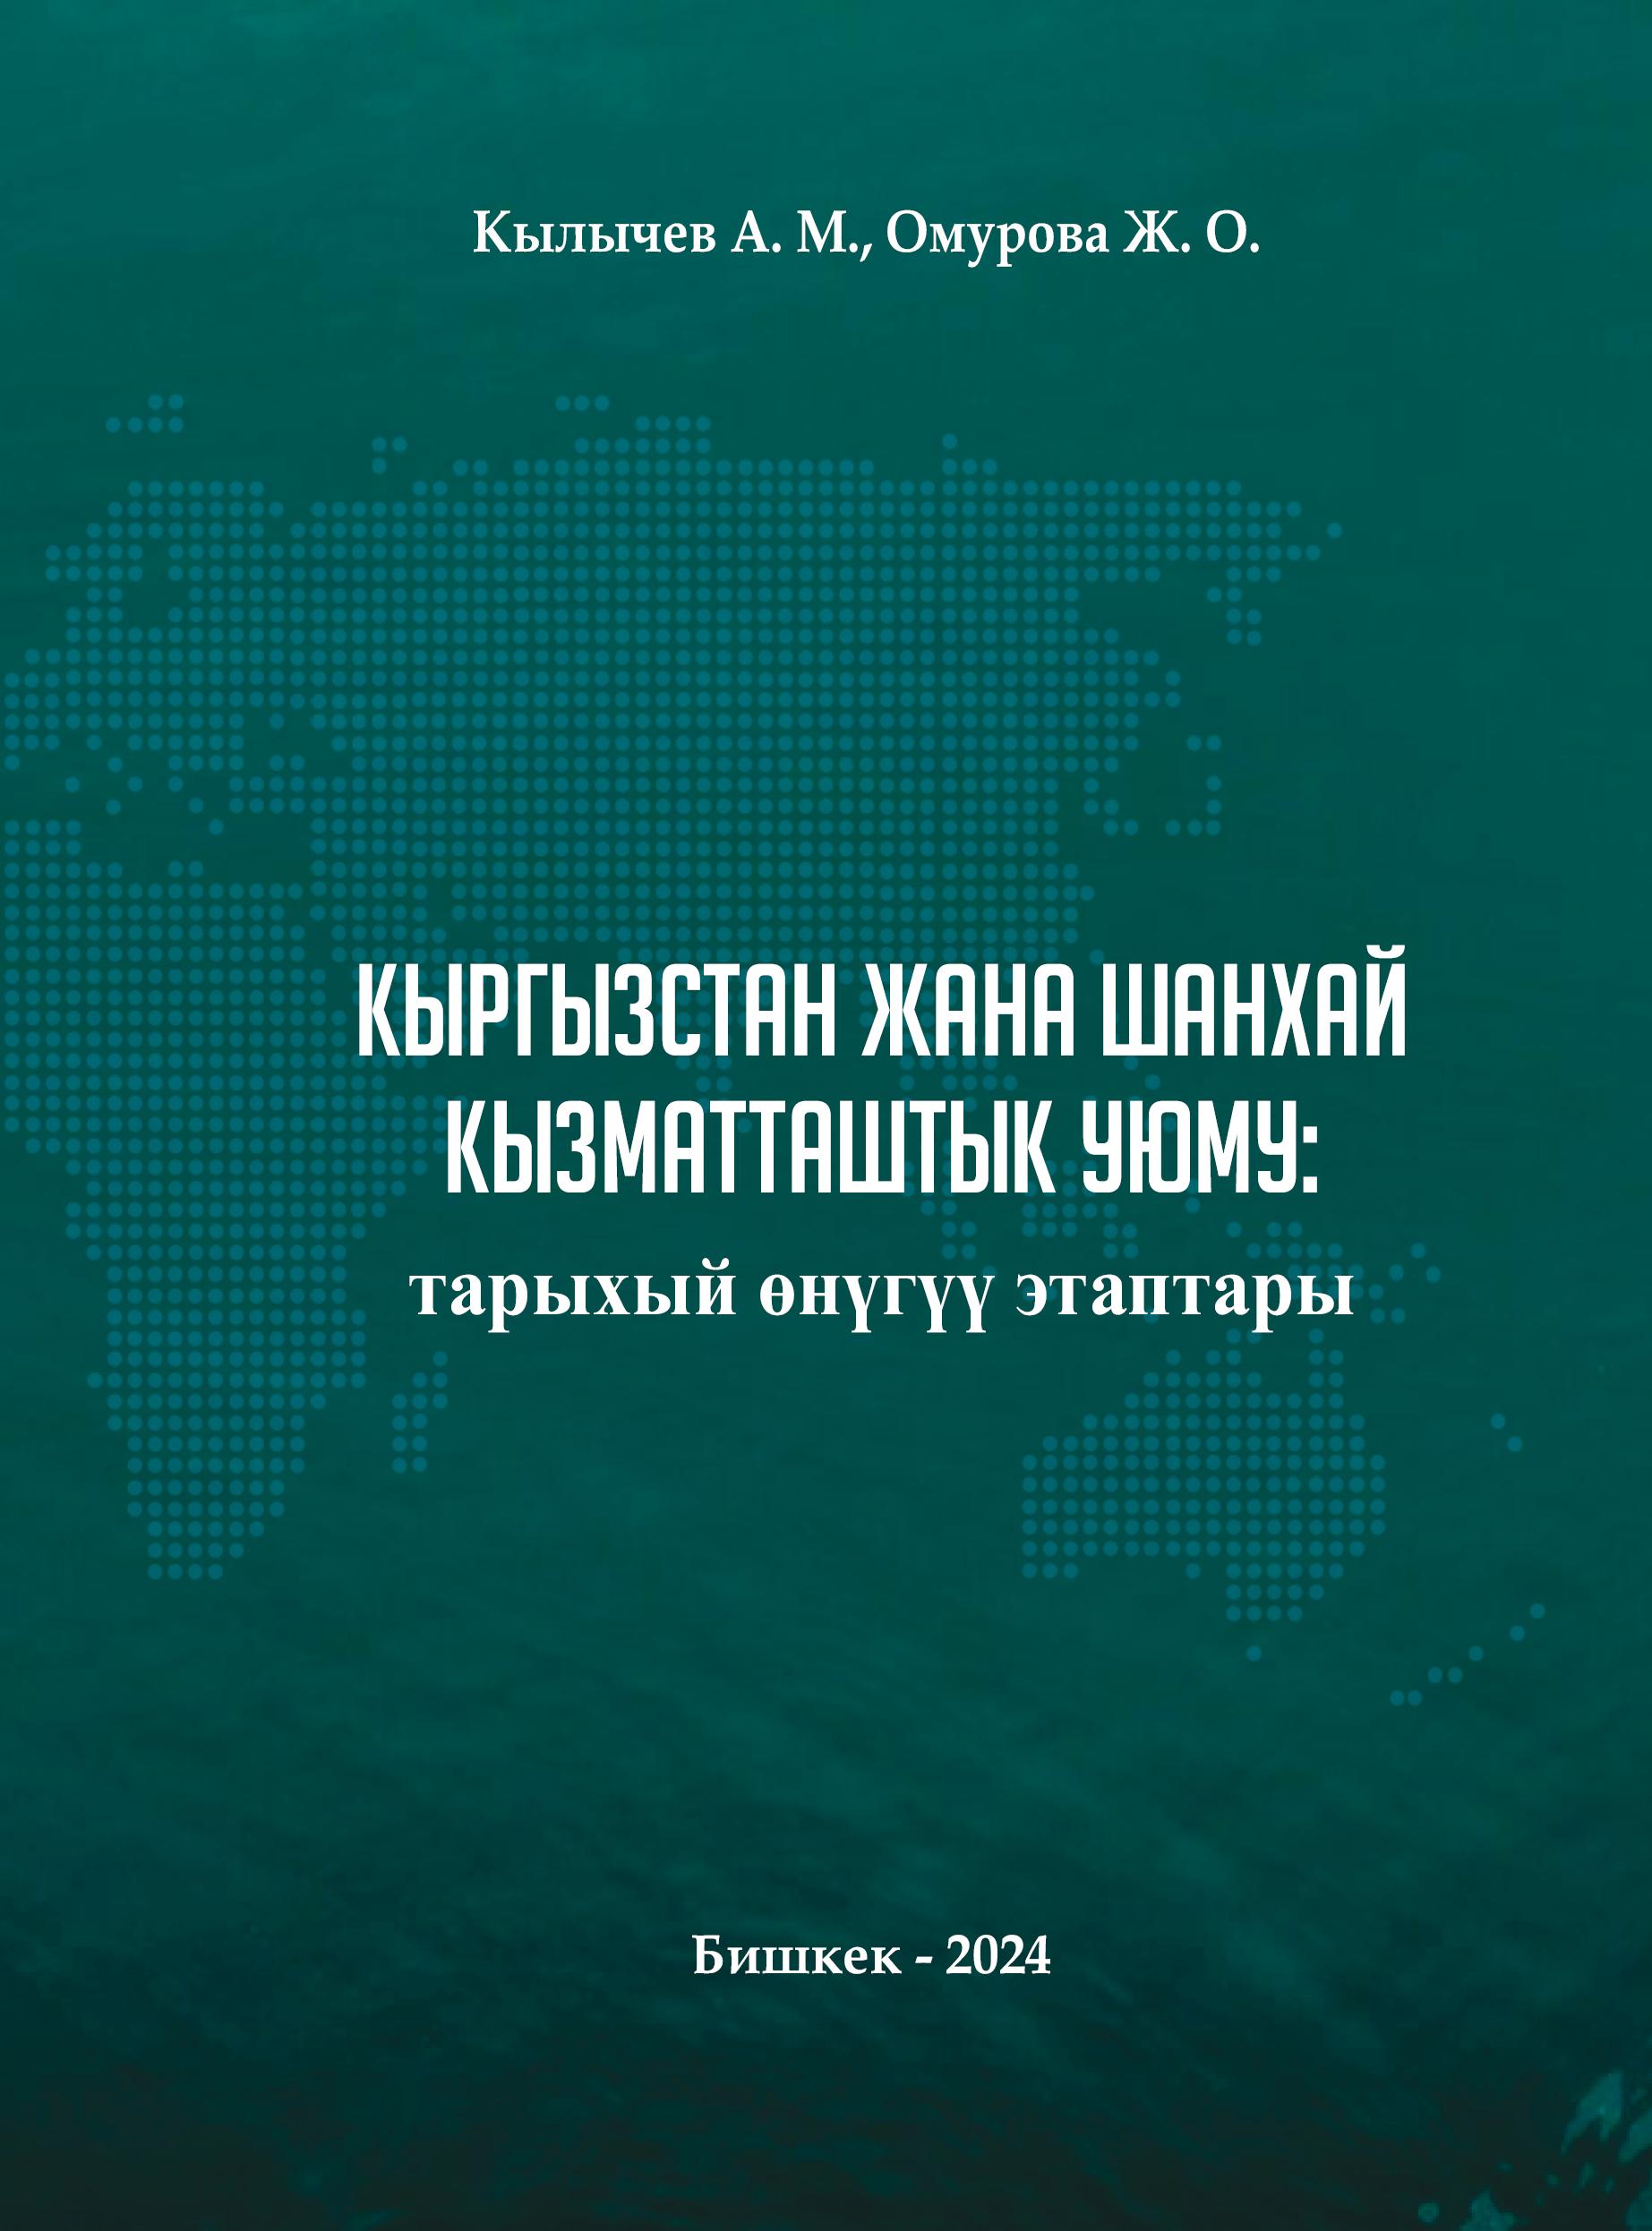 Сотрудники НОЦ «Большой Алтай» подготовили монографию «Кыргызстан и Шанхайская организация сотрудничества: этапы исторического развития»